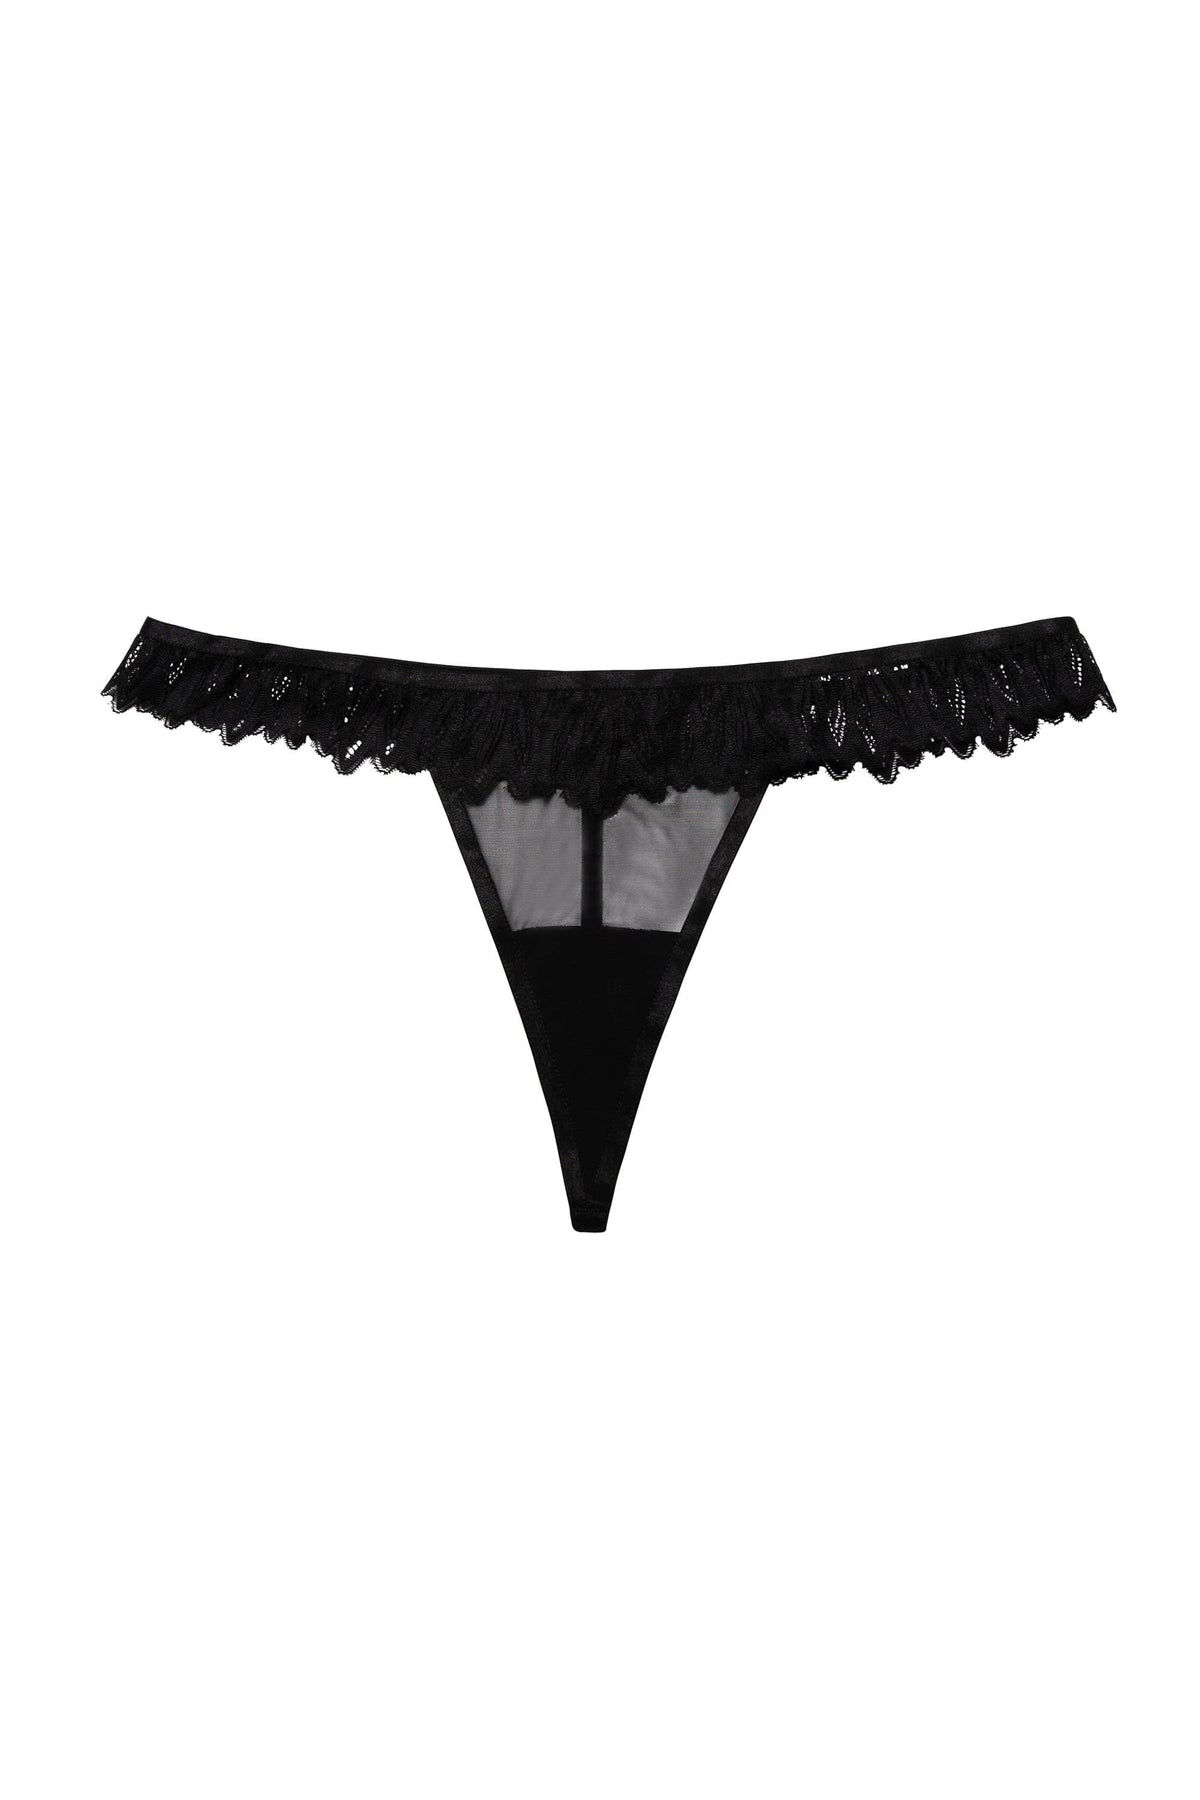 JELING】Minimalist - Seamless Thong (Black) - Shop jelingfit